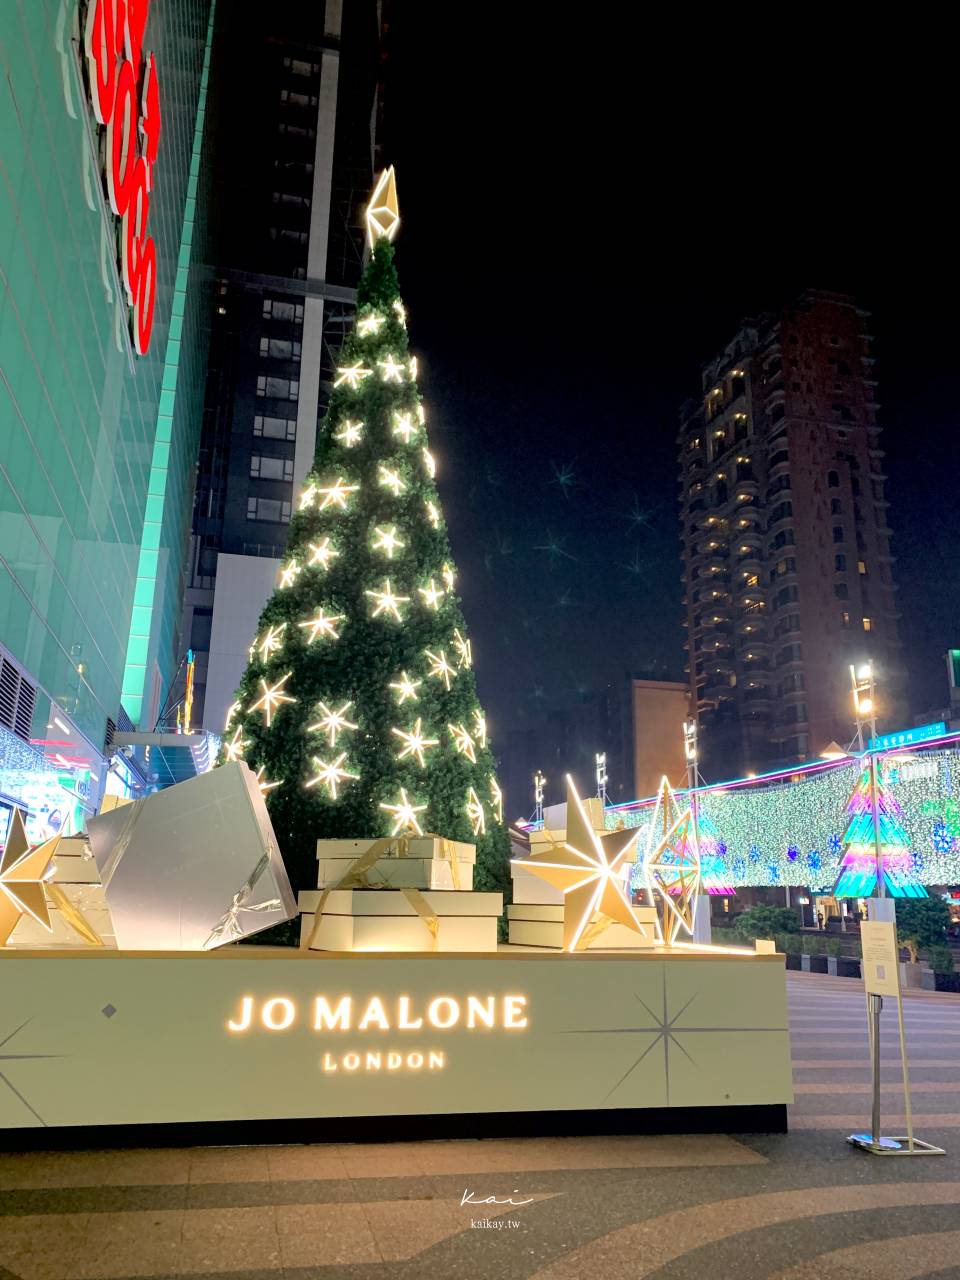 ☆【台北聖誕】SOGO聖誕樹雙亮點！粉紅聖誕樹、Jo malone白金聖誕樹超吸睛